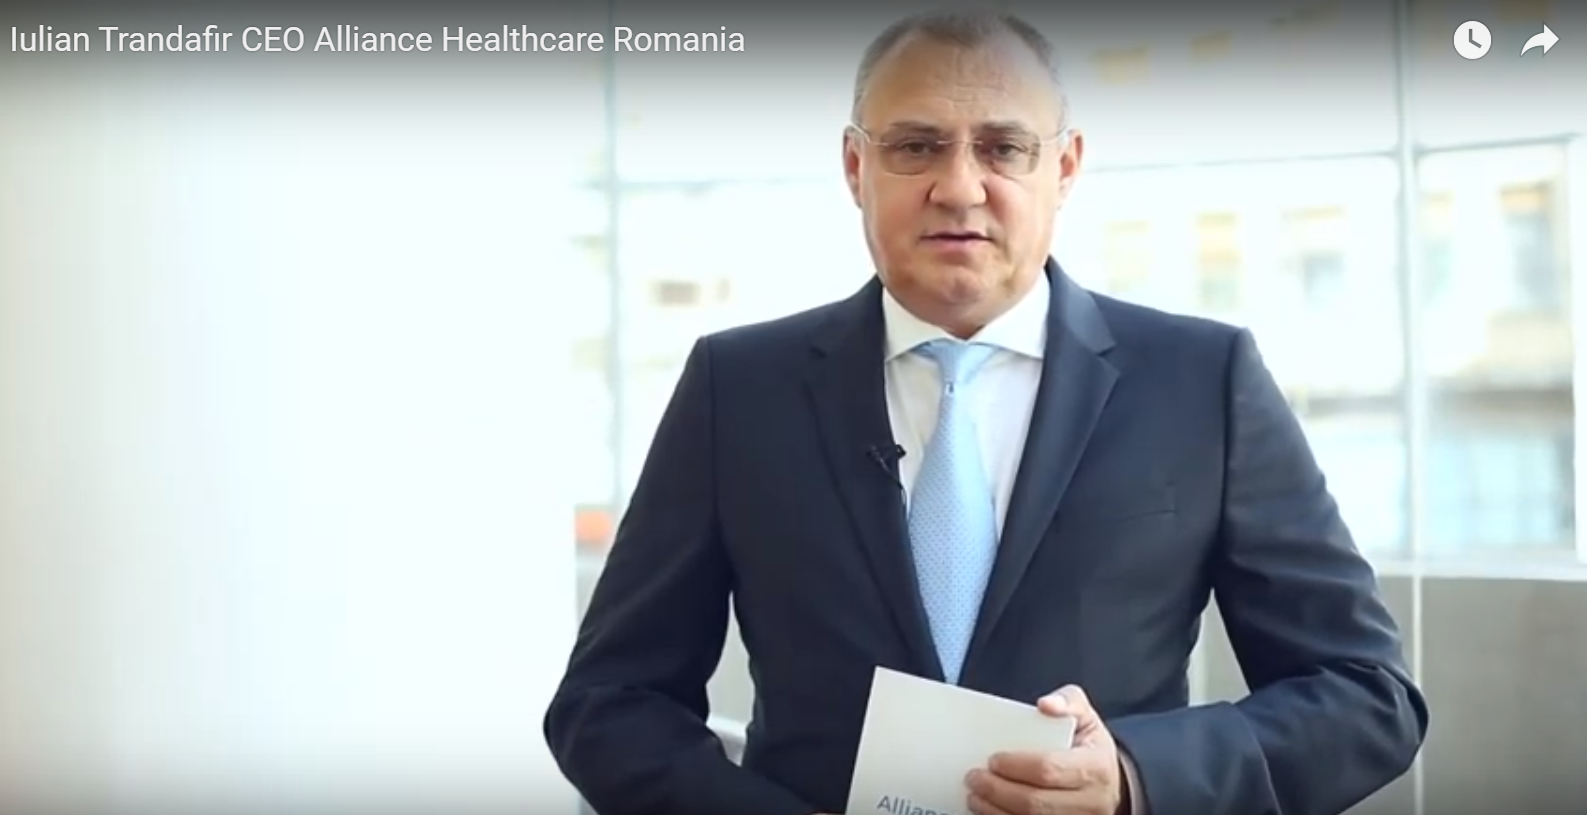 Iulian Trandafir, CEO Alliance Healthcare Romania: ”Portofoliul de medicamente din România a scăzut foarte mult în ultimii ani și va continua să scadă”